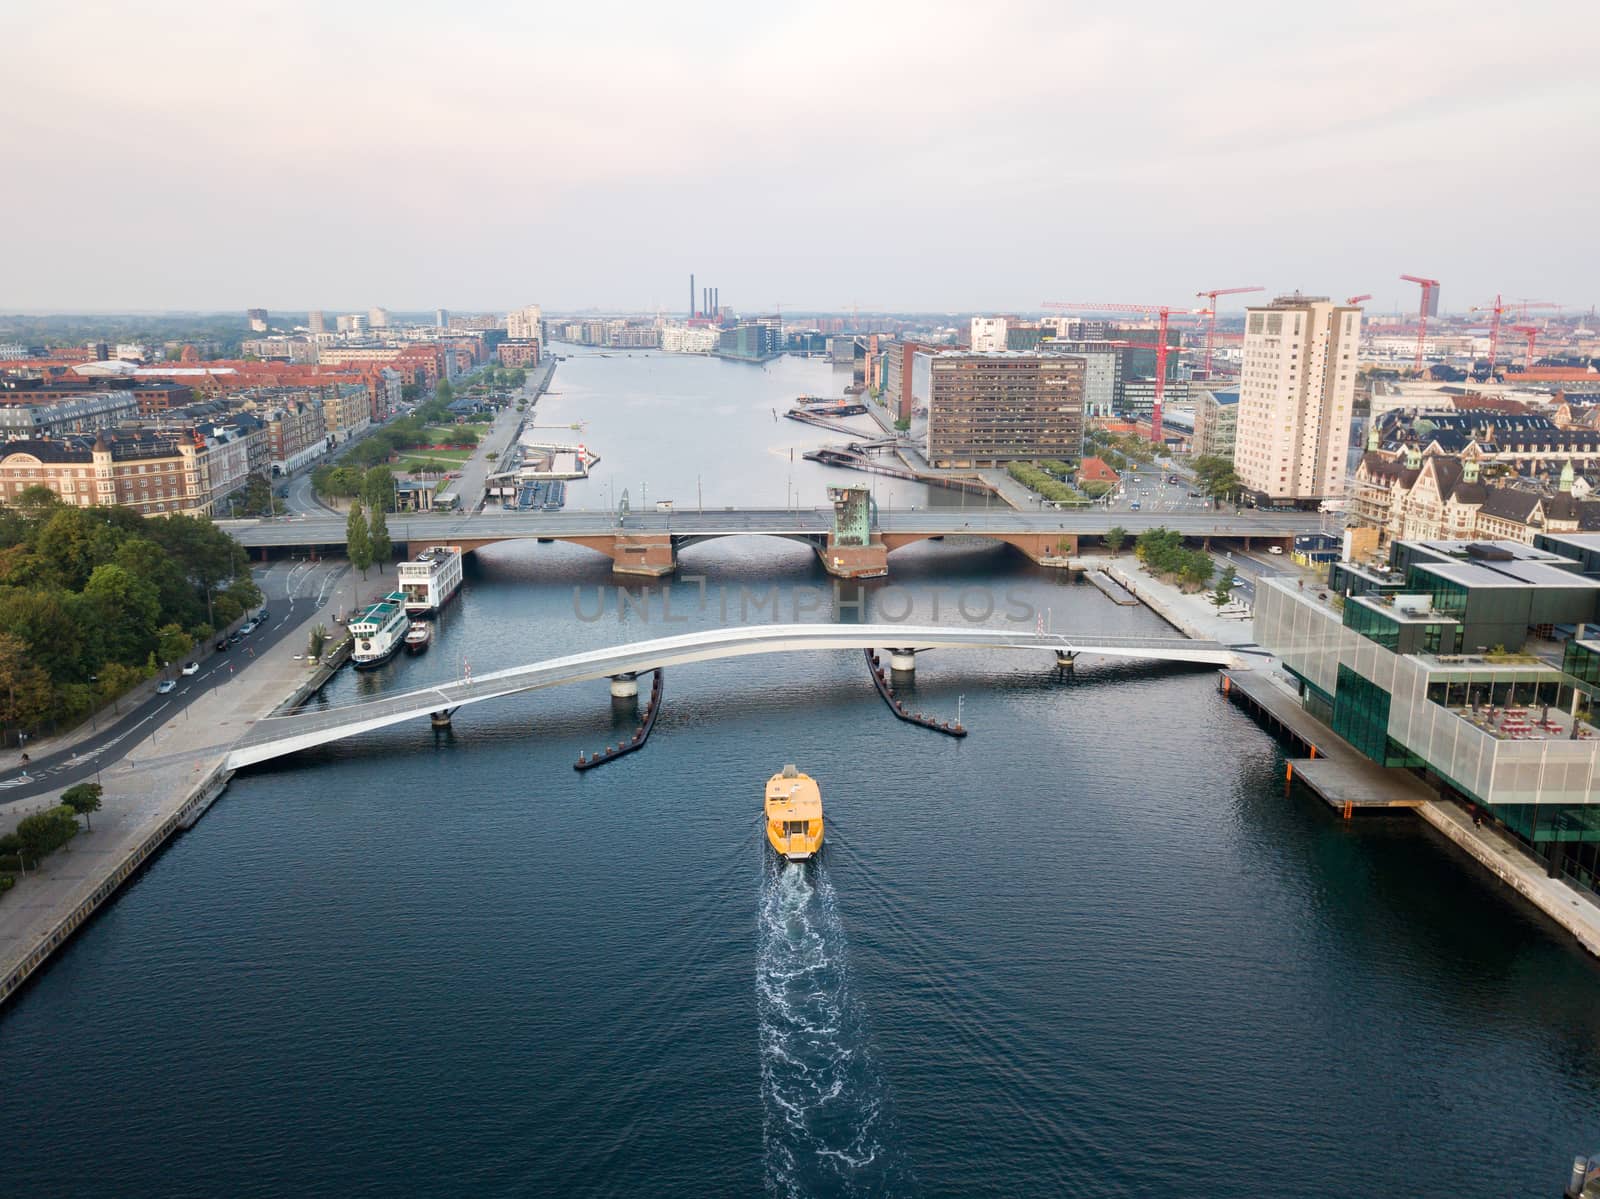 Two Bridges Langebro and Lille Langebro in Copenhagen, Denmark by oliverfoerstner